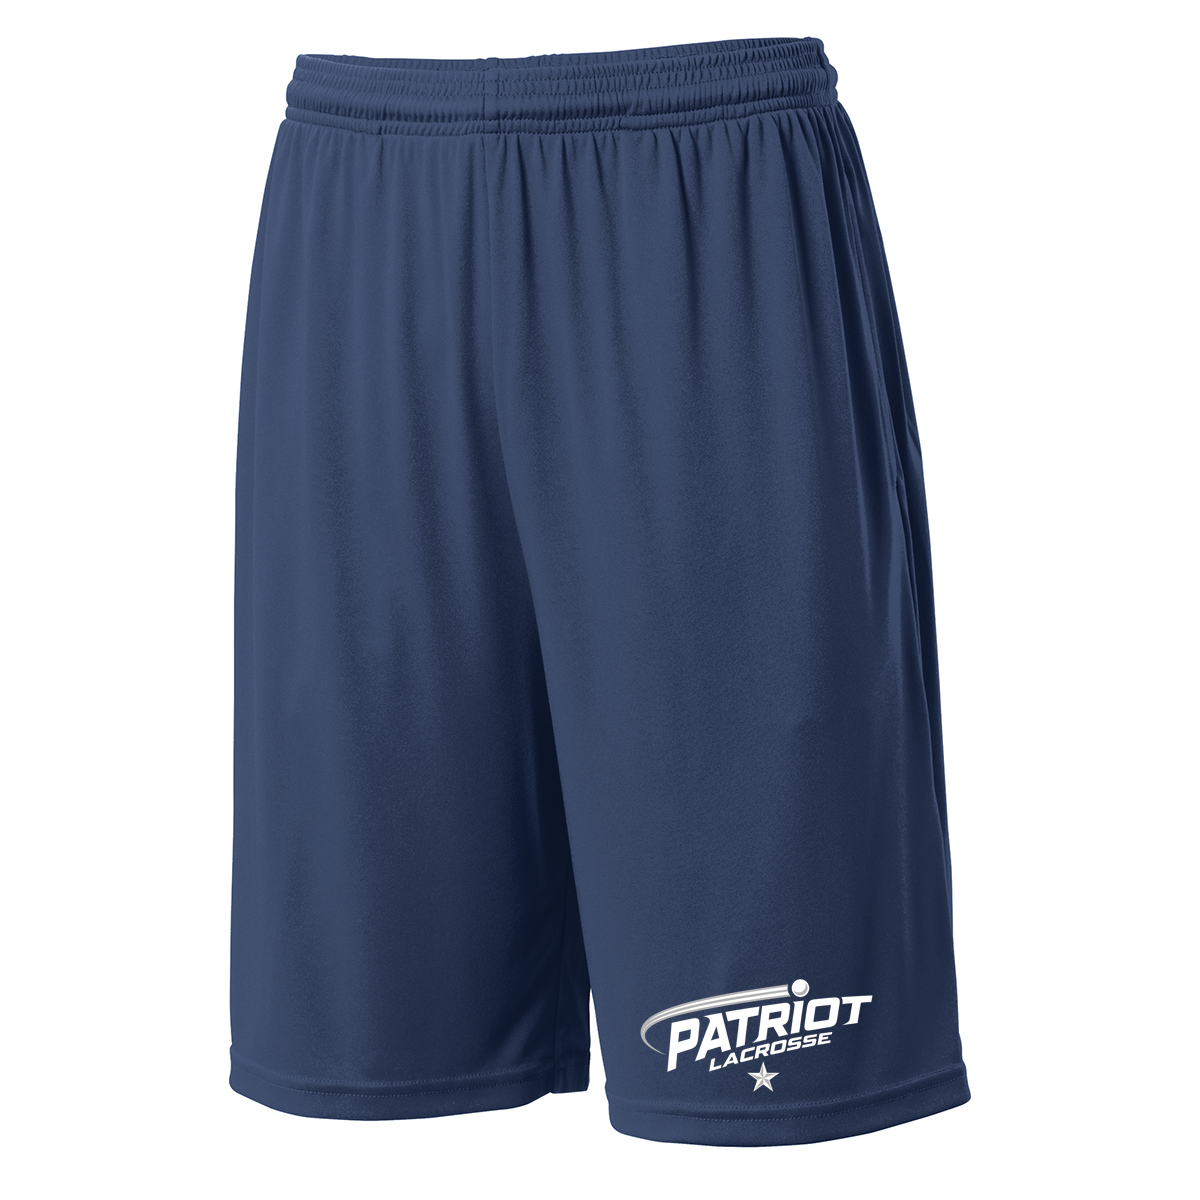 Patriot Lacrosse Shorts